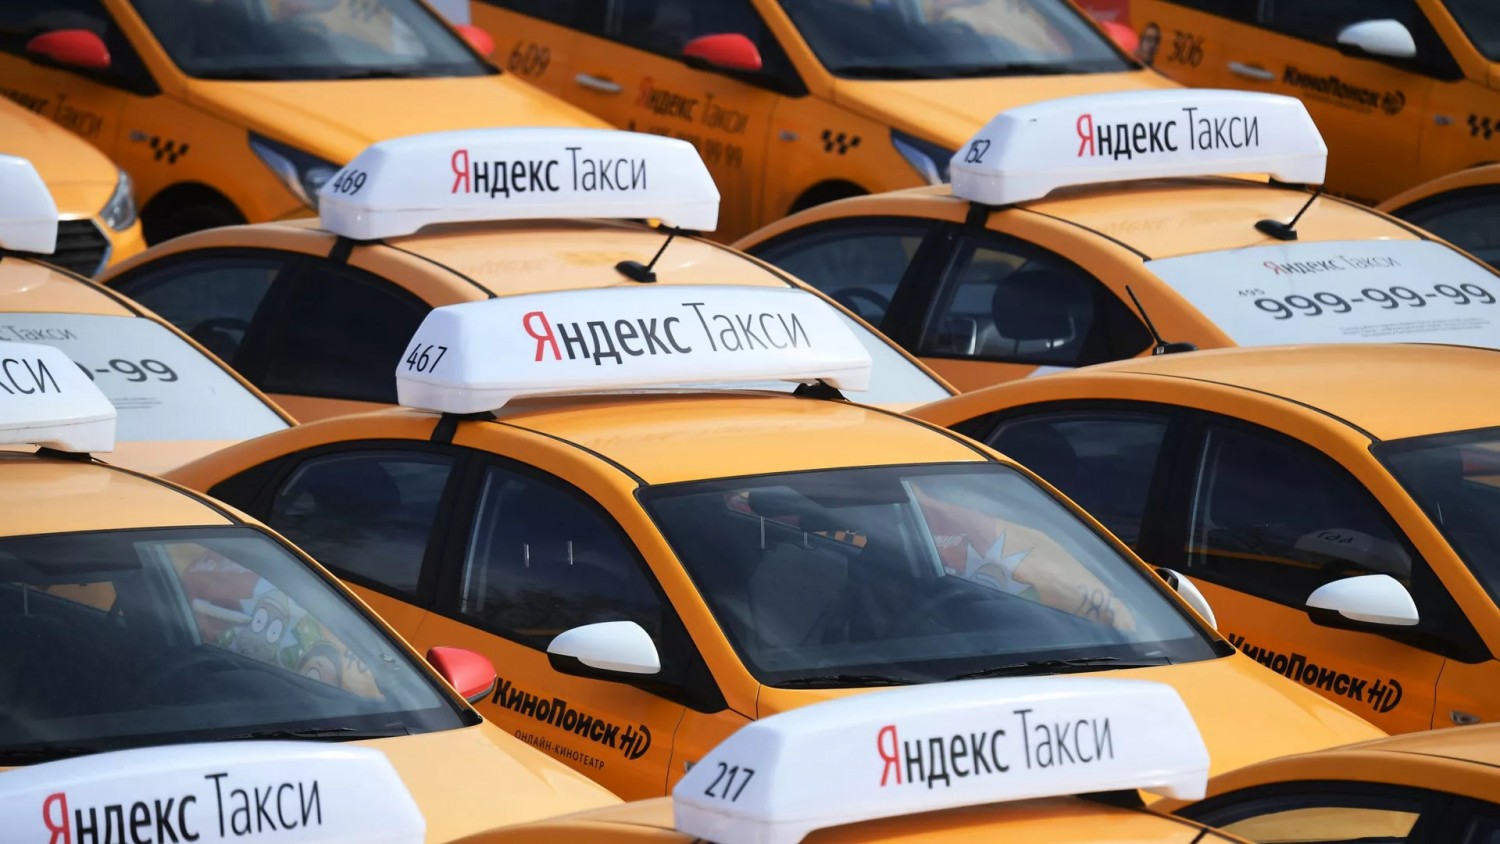 ФАС выявила серьезные нарушения у “Яндекс.Такси”